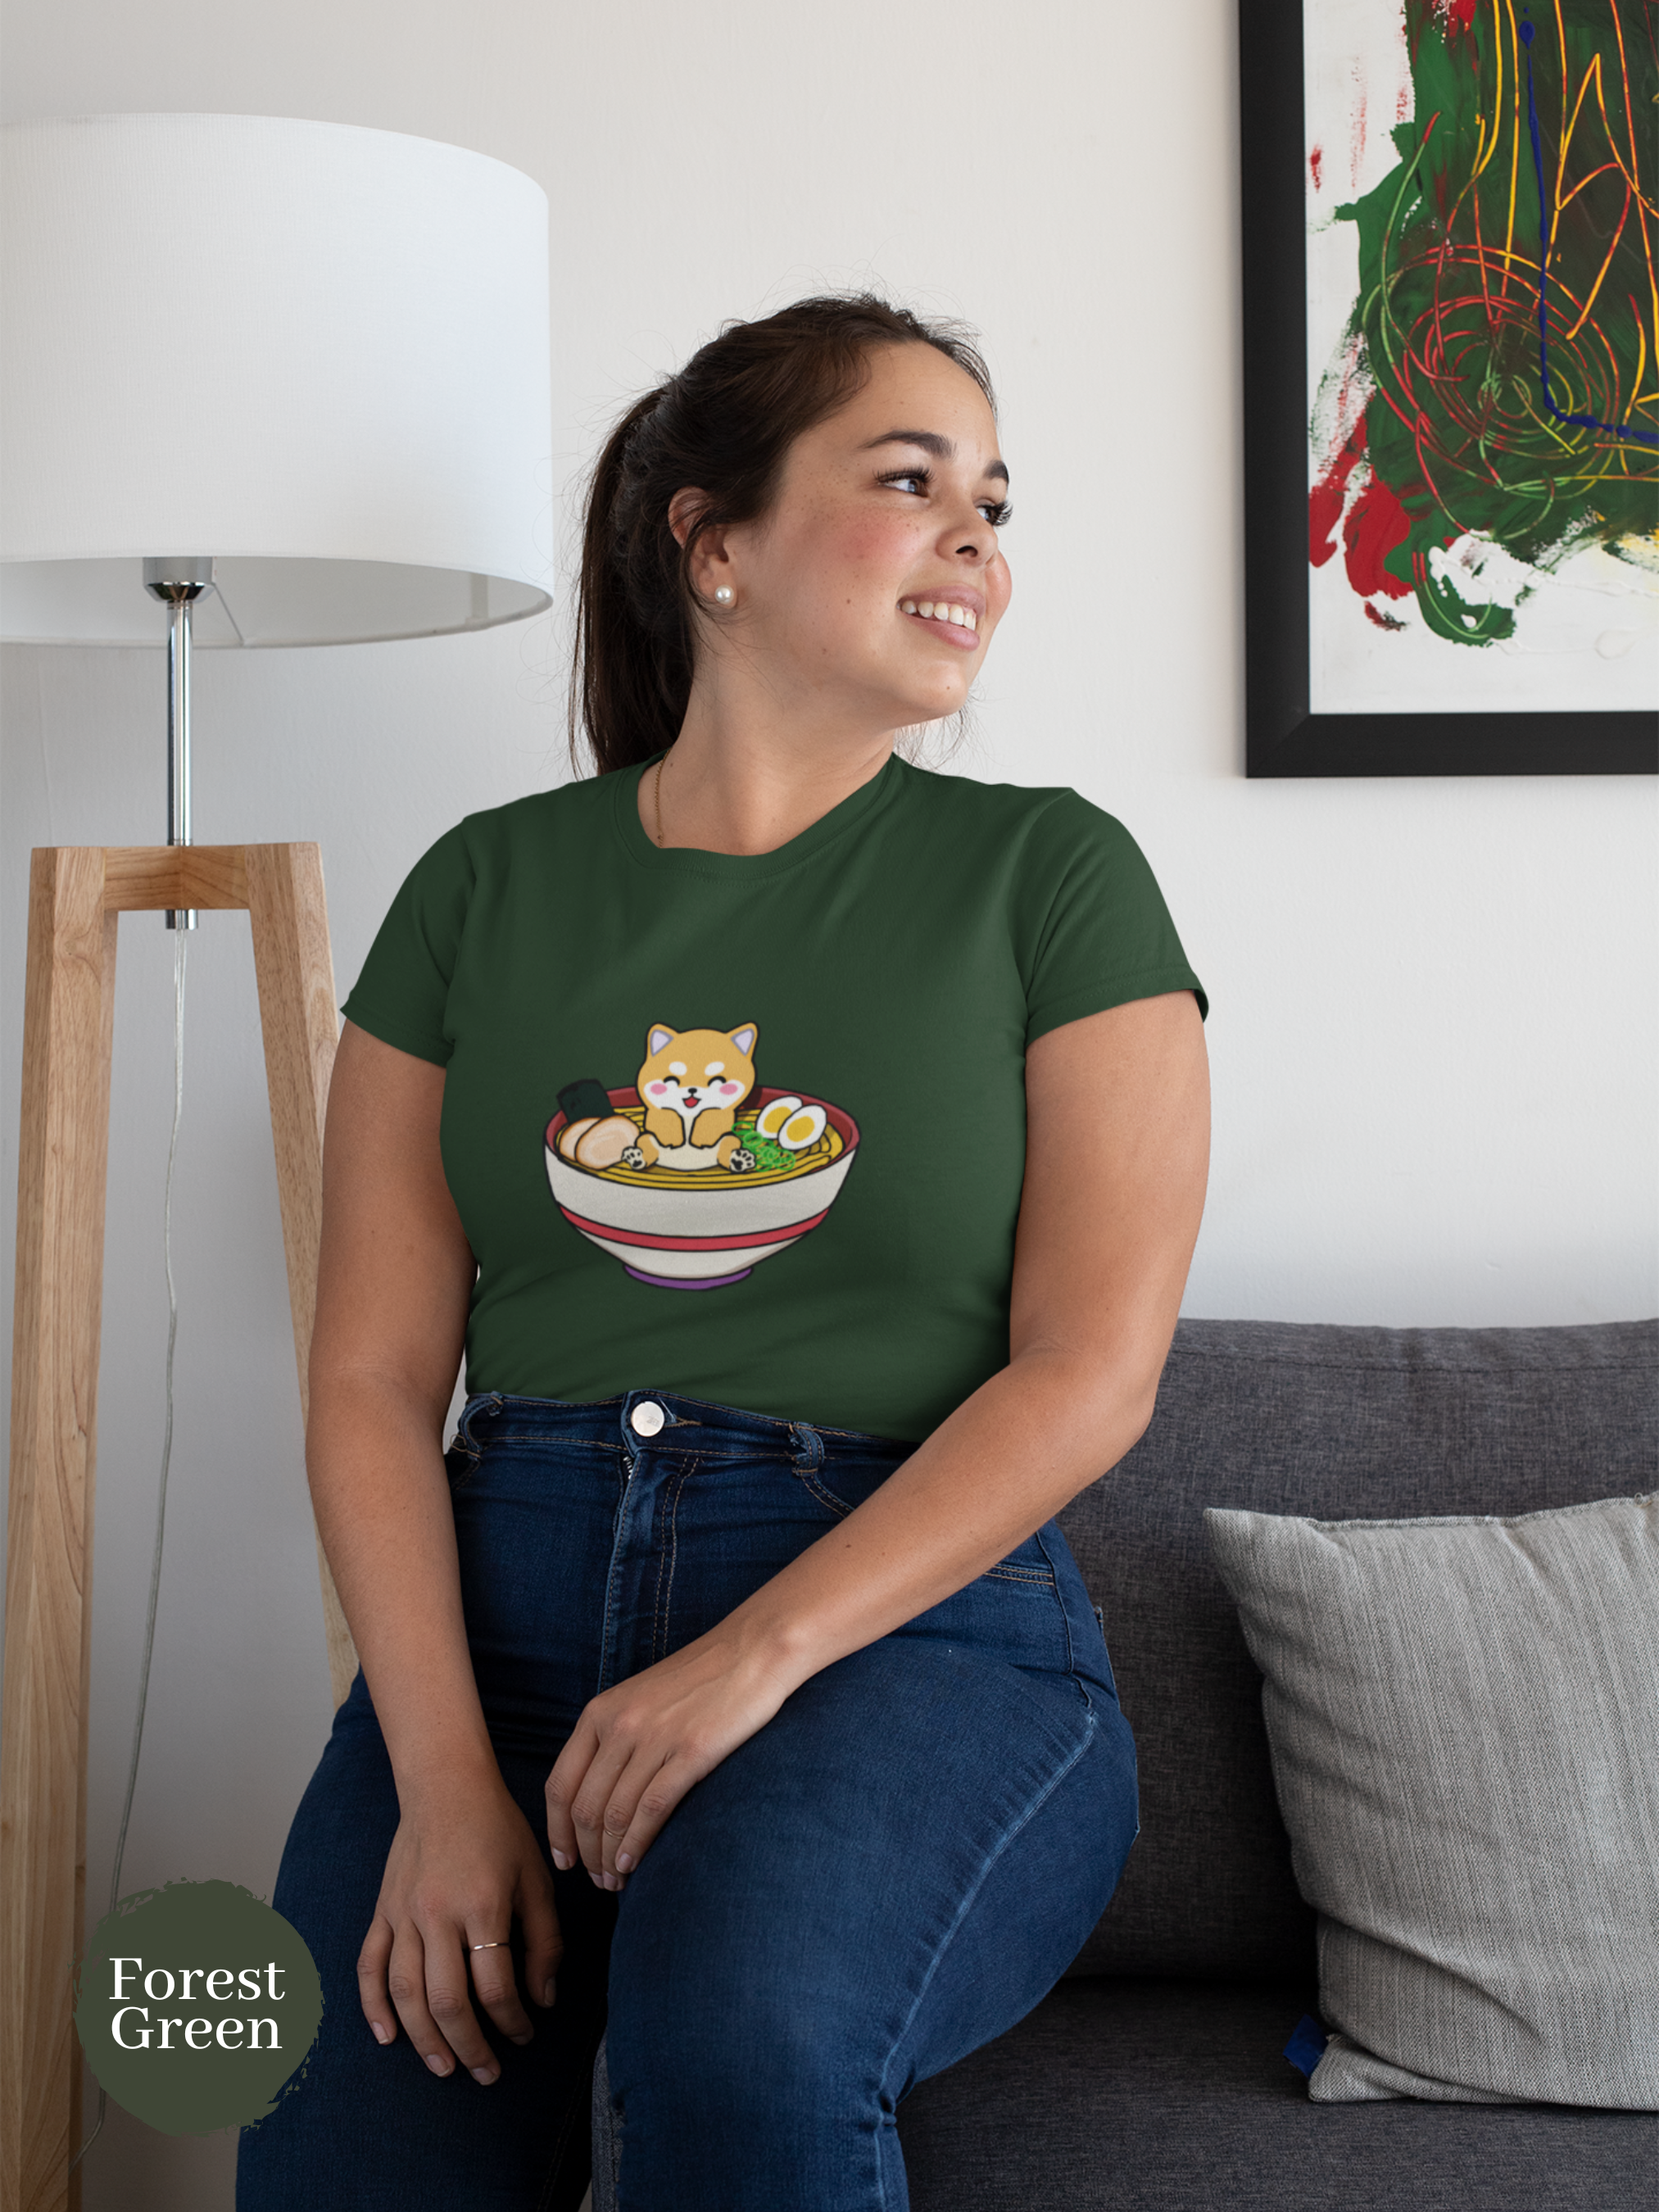 Ramen T-shirt: Japanese Foodie Shirt with Adorable Shiba Inu Ramen Art for Ramen Lovers